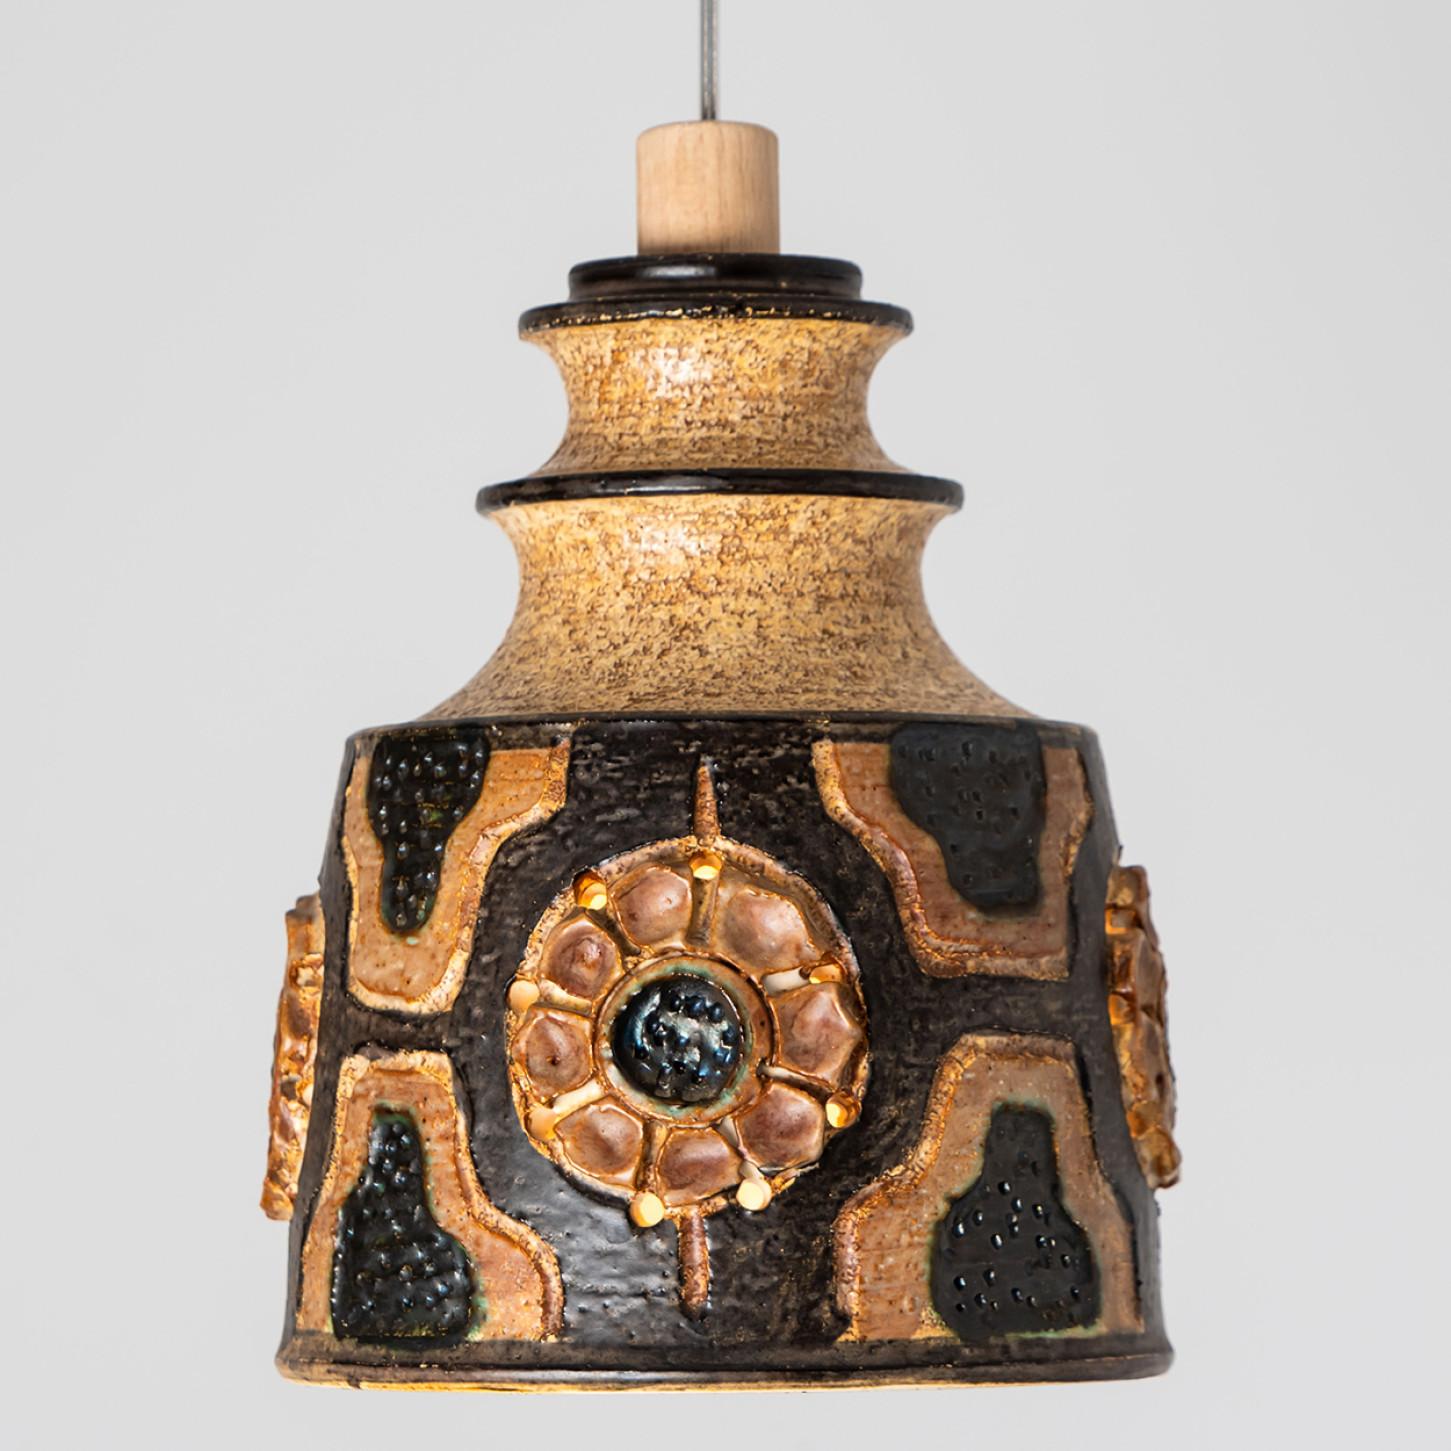 Wunderschöne runde Hängelampe mit einer ungewöhnlichen Form, hergestellt aus farbenprächtiger brauner Keramik, hergestellt in den 1970er Jahren in Dänemark.

Mit schönem, zerbrechlichem Stahlseil und hölzernen Details. An einem Stahlseil hängend